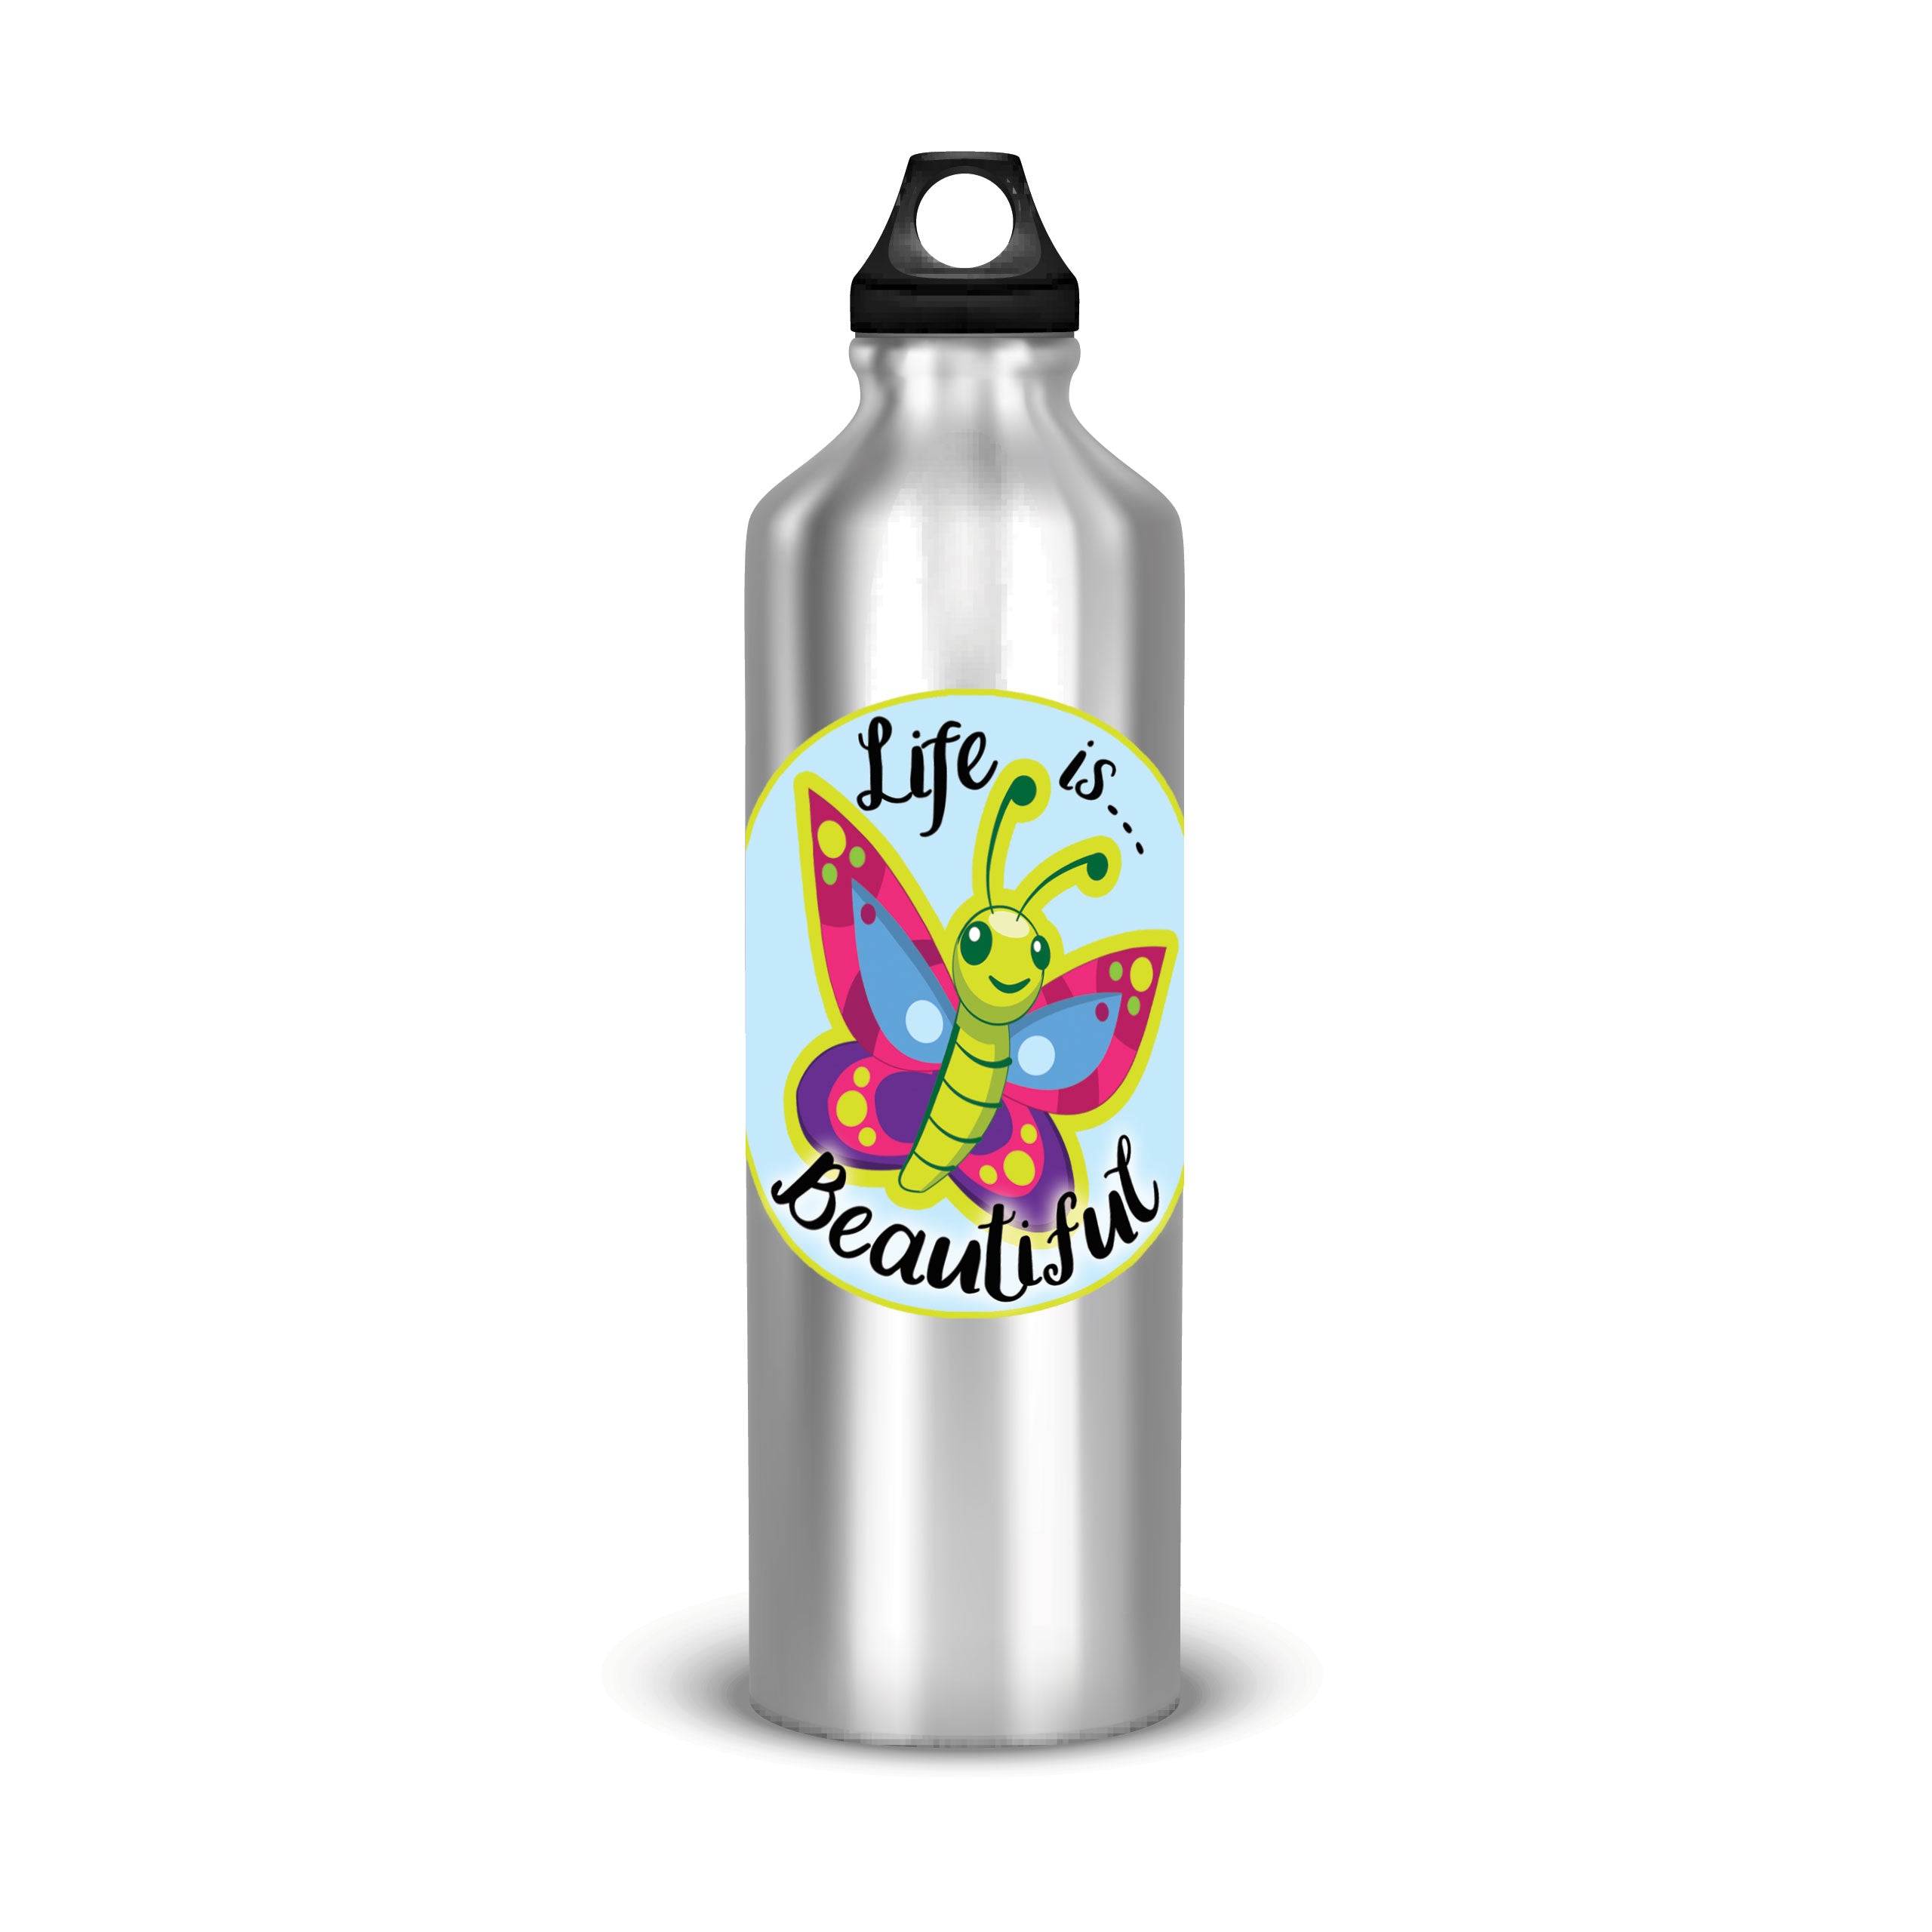 Life is Beautiful Water Bottle Sticker & Tumbler Decal, Laptop Car Truck  Sticker Waterproof 4